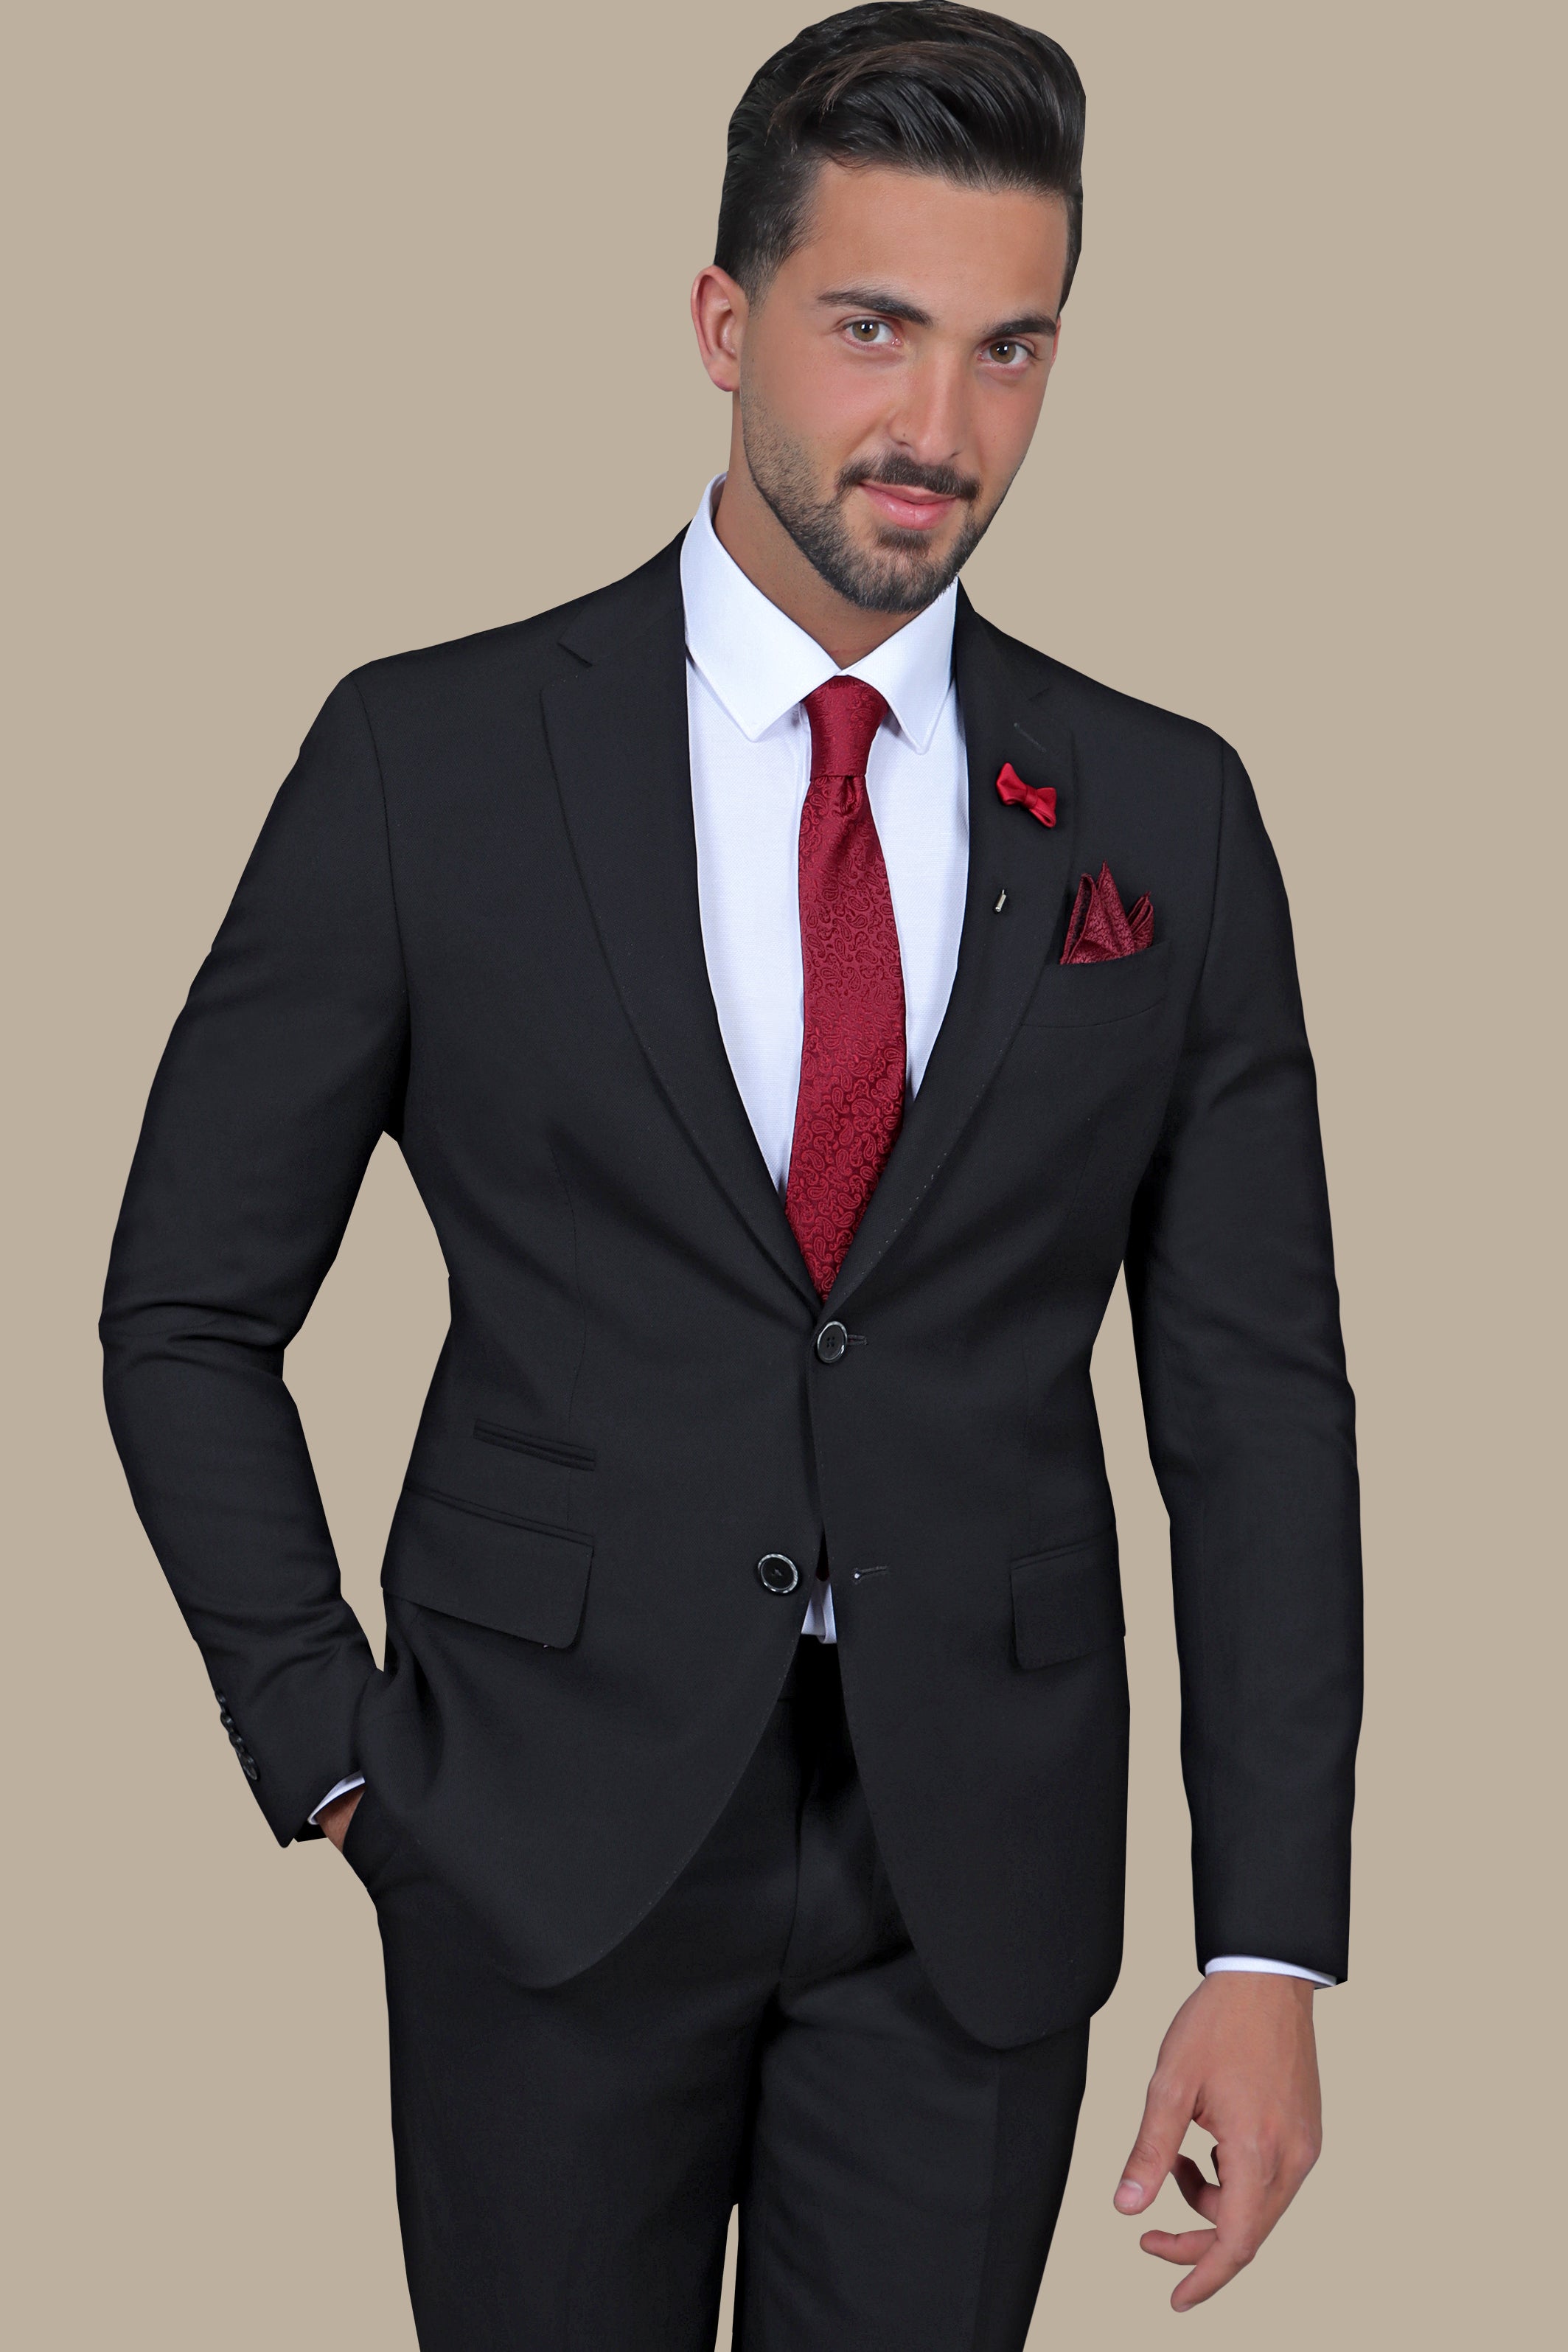 Refined Sophistication: The Black Pique Notch Suit